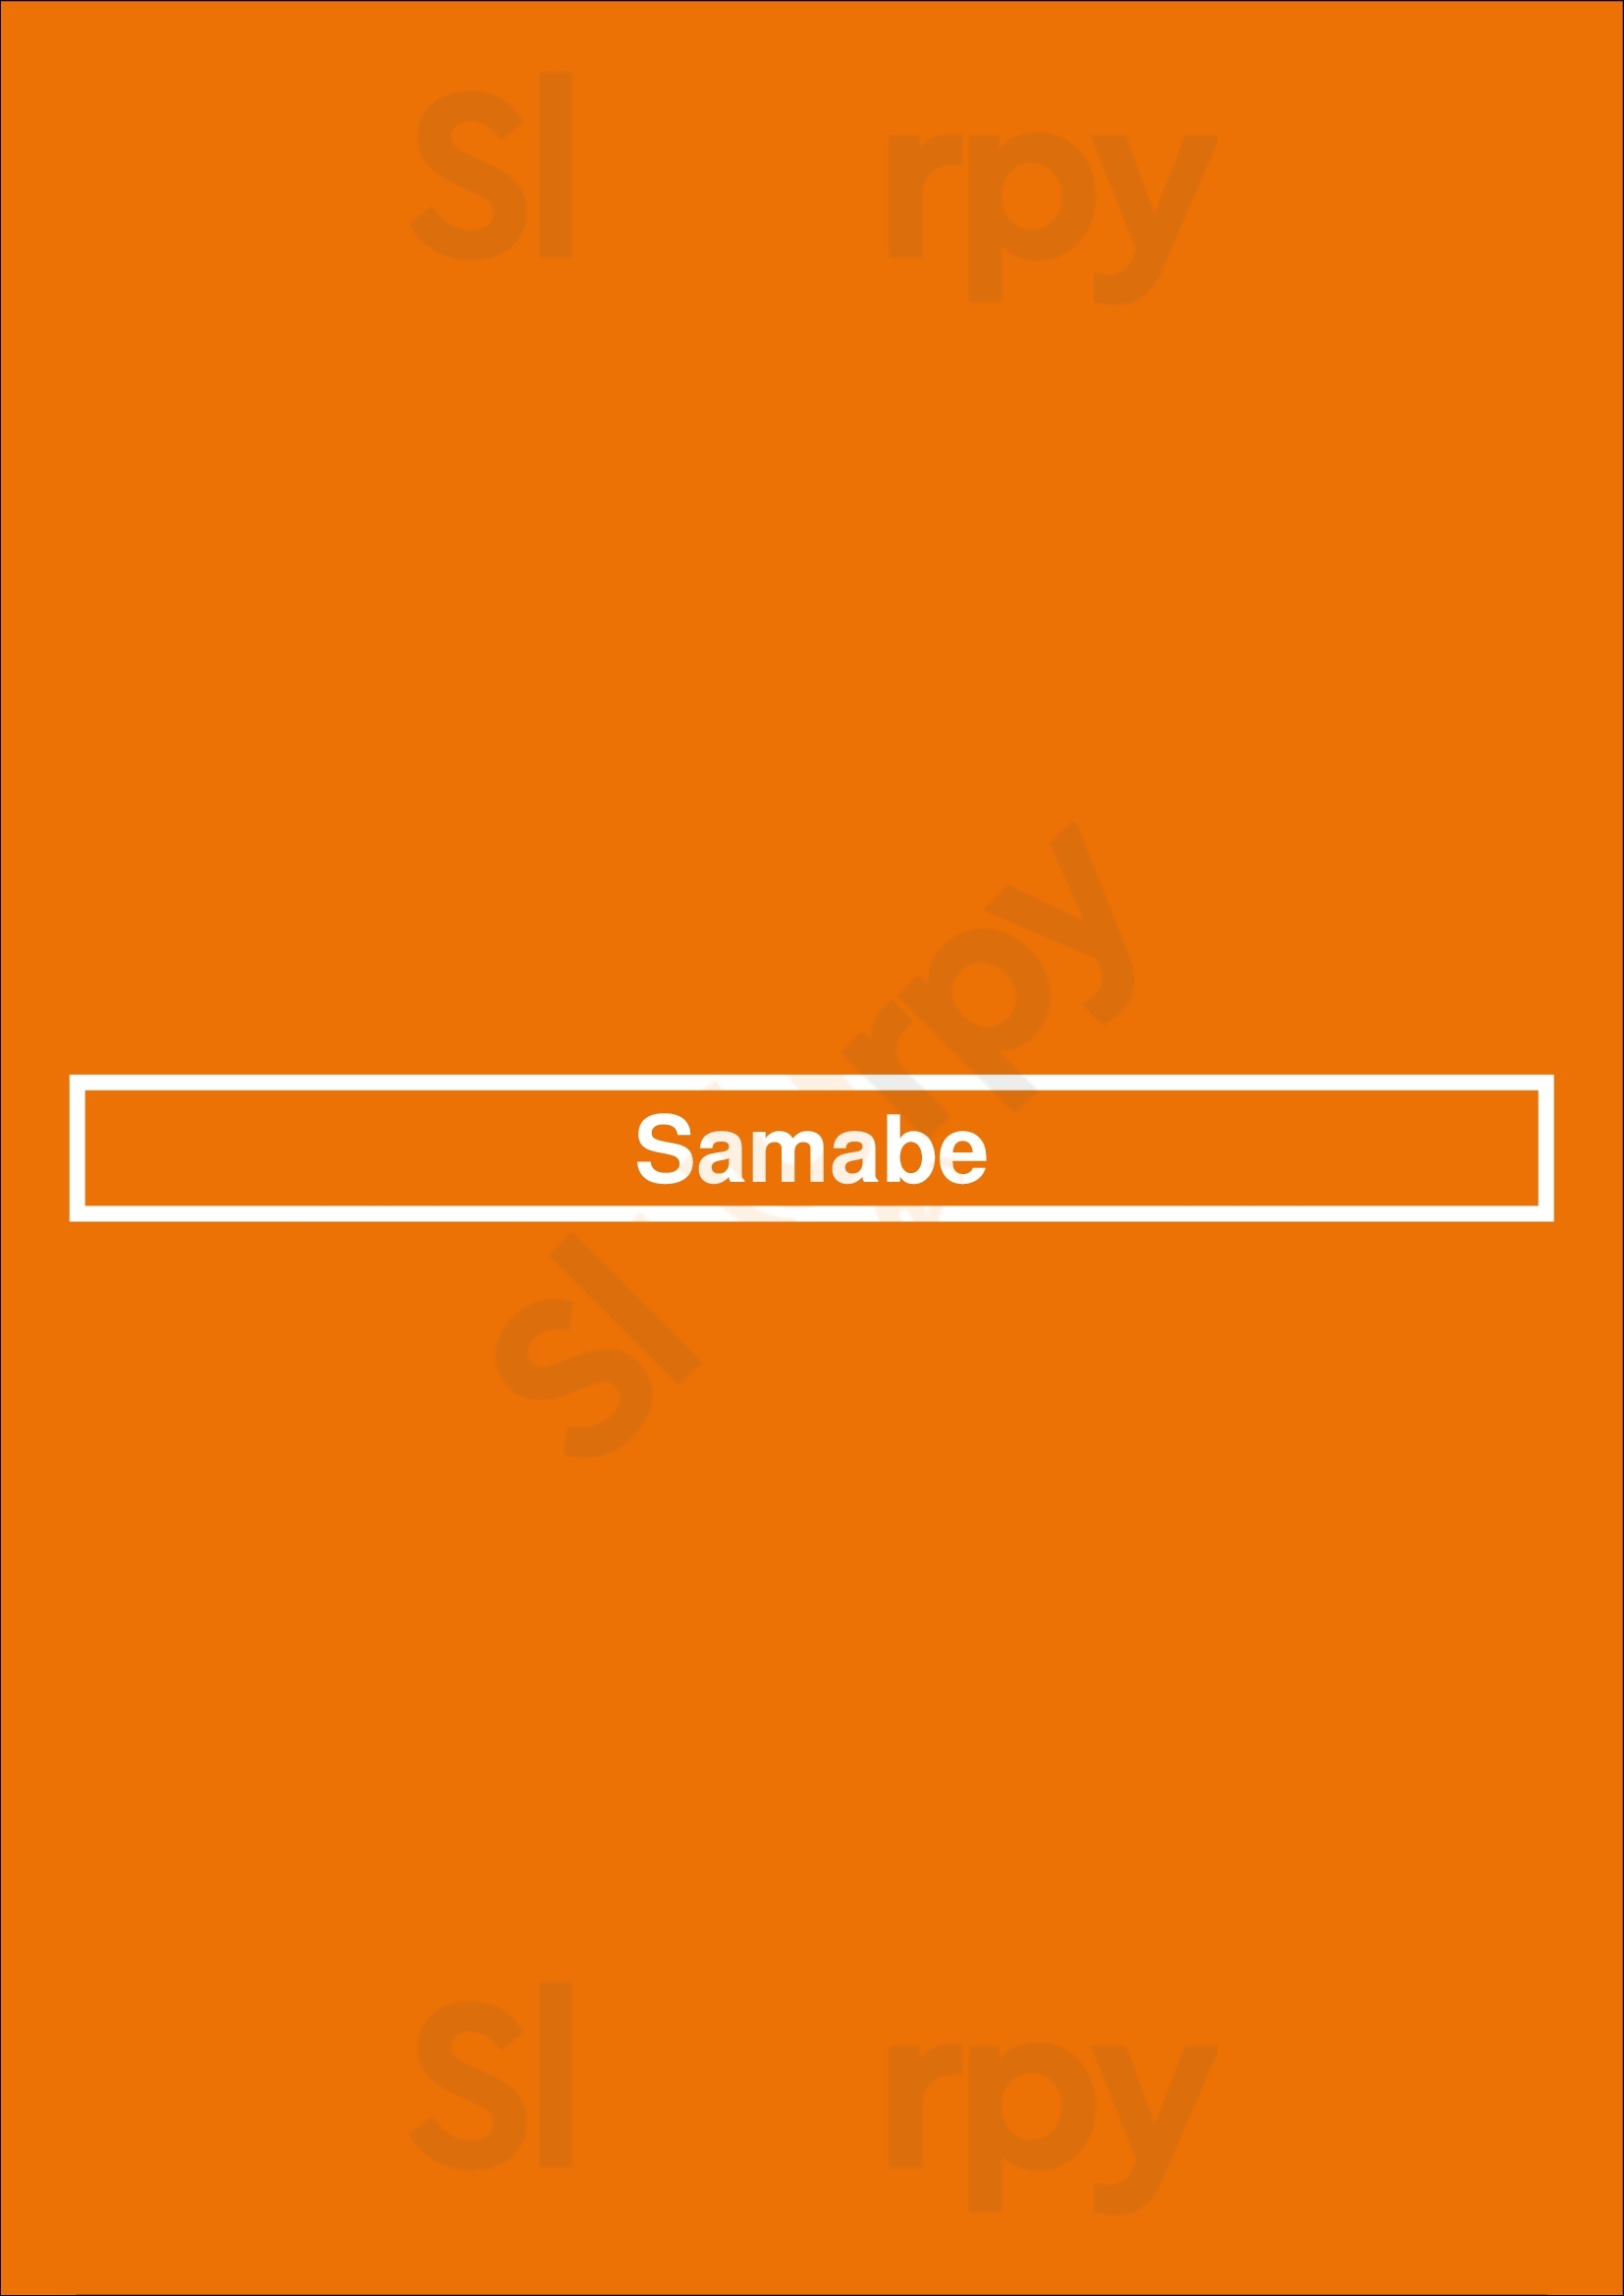 Samabe Haarlem Menu - 1